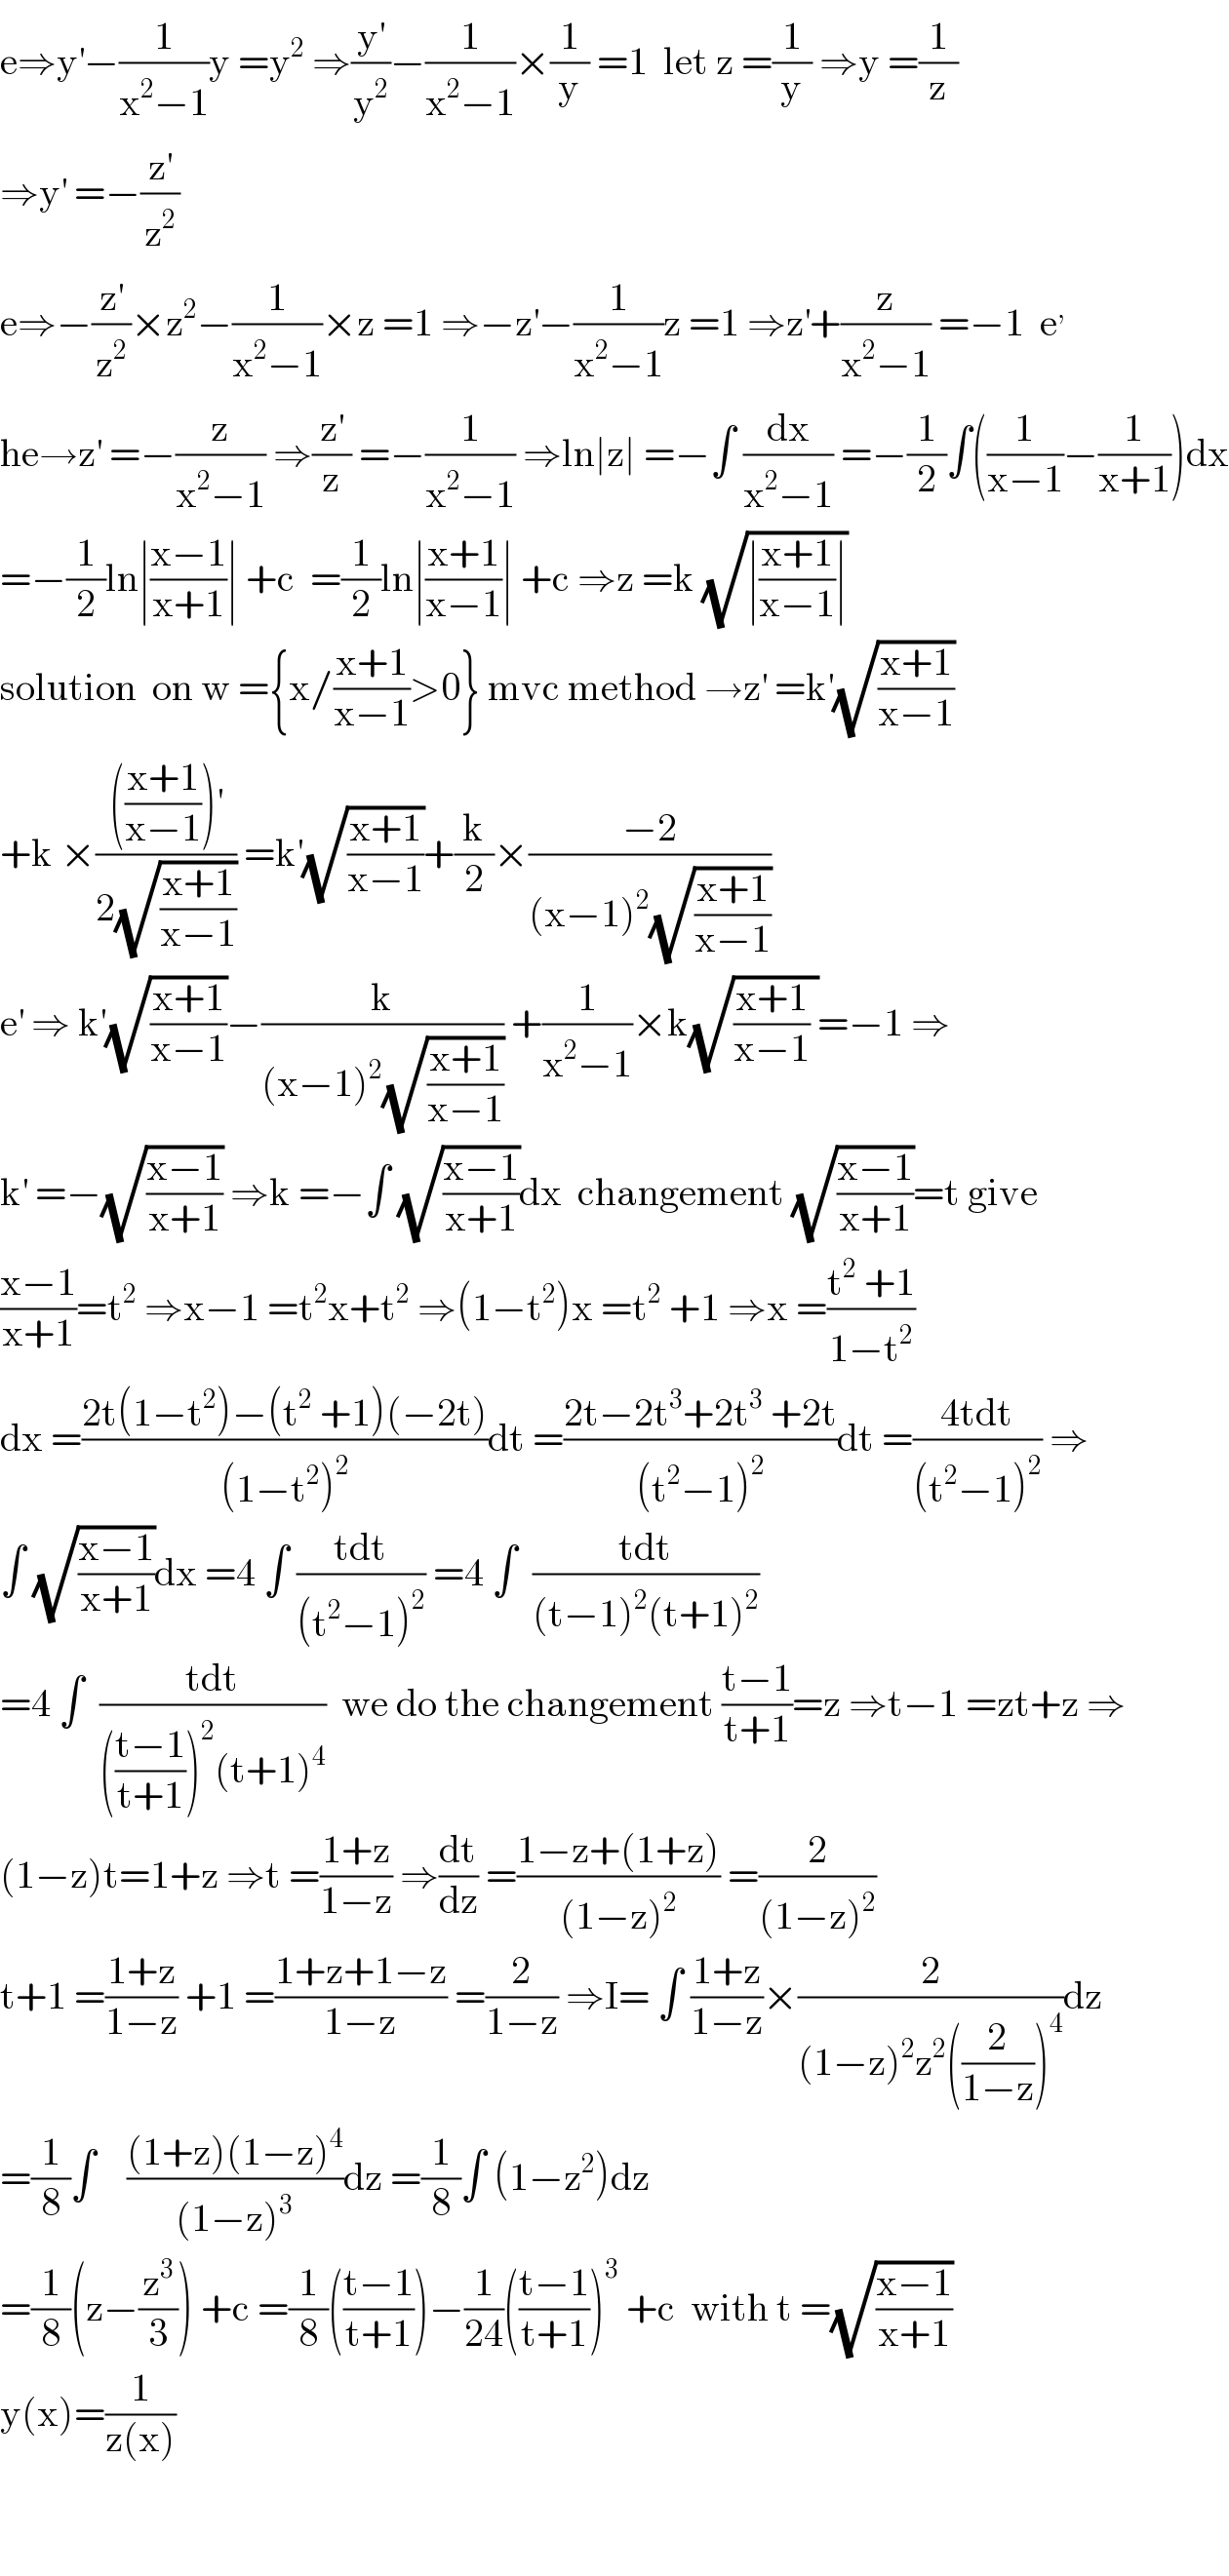 e⇒y^′ −(1/(x^2 −1))y =y^2  ⇒(y^′ /y^2 )−(1/(x^2 −1))×(1/y) =1  let z =(1/y) ⇒y =(1/z)  ⇒y^′  =−(z^′ /z^2 )  e⇒−(z^′ /z^2 )×z^2 −(1/(x^2 −1))×z =1 ⇒−z^′ −(1/(x^2 −1))z =1 ⇒z^′ +(z/(x^2 −1)) =−1  e^,   he→z^′  =−(z/(x^2 −1)) ⇒(z^′ /z) =−(1/(x^2 −1)) ⇒ln∣z∣ =−∫ (dx/(x^2 −1)) =−(1/2)∫((1/(x−1))−(1/(x+1)))dx  =−(1/2)ln∣((x−1)/(x+1))∣ +c  =(1/2)ln∣((x+1)/(x−1))∣ +c ⇒z =k (√(∣((x+1)/(x−1))∣))  solution  on w ={x/((x+1)/(x−1))>0} mvc method →z^′  =k^′ (√((x+1)/(x−1)))  +k ×(((((x+1)/(x−1)))^′ )/(2(√((x+1)/(x−1))))) =k^′ (√((x+1)/(x−1)))+(k/2)×((−2)/((x−1)^2 (√((x+1)/(x−1)))))  e^′  ⇒ k^′ (√((x+1)/(x−1)))−(k/((x−1)^2 (√((x+1)/(x−1))))) +(1/(x^2 −1))×k(√(((x+1)/(x−1)) ))=−1 ⇒  k^′  =−(√((x−1)/(x+1))) ⇒k =−∫ (√((x−1)/(x+1)))dx  changement (√((x−1)/(x+1)))=t give  ((x−1)/(x+1))=t^2  ⇒x−1 =t^2 x+t^2  ⇒(1−t^2 )x =t^2  +1 ⇒x =((t^2  +1)/(1−t^2 ))  dx =((2t(1−t^2 )−(t^2  +1)(−2t))/((1−t^2 )^2 ))dt =((2t−2t^3 +2t^3  +2t)/((t^2 −1)^2 ))dt =((4tdt)/((t^2 −1)^2 )) ⇒  ∫ (√((x−1)/(x+1)))dx =4 ∫ ((tdt)/((t^2 −1)^2 )) =4 ∫  ((tdt)/((t−1)^2 (t+1)^2 ))  =4 ∫  ((tdt)/((((t−1)/(t+1)))^2 (t+1)^4 ))  we do the changement ((t−1)/(t+1))=z ⇒t−1 =zt+z ⇒  (1−z)t=1+z ⇒t =((1+z)/(1−z)) ⇒(dt/dz) =((1−z+(1+z))/((1−z)^2 )) =(2/((1−z)^2 ))  t+1 =((1+z)/(1−z)) +1 =((1+z+1−z)/(1−z)) =(2/(1−z)) ⇒I= ∫ ((1+z)/(1−z))×(2/((1−z)^2 z^2 ((2/(1−z)))^4 ))dz  =(1/8)∫    (((1+z)(1−z)^4 )/((1−z)^3 ))dz =(1/8)∫ (1−z^2 )dz  =(1/8)(z−(z^3 /3)) +c =(1/8)(((t−1)/(t+1)))−(1/(24))(((t−1)/(t+1)))^3  +c  with t =(√((x−1)/(x+1)))  y(x)=(1/(z(x)))      